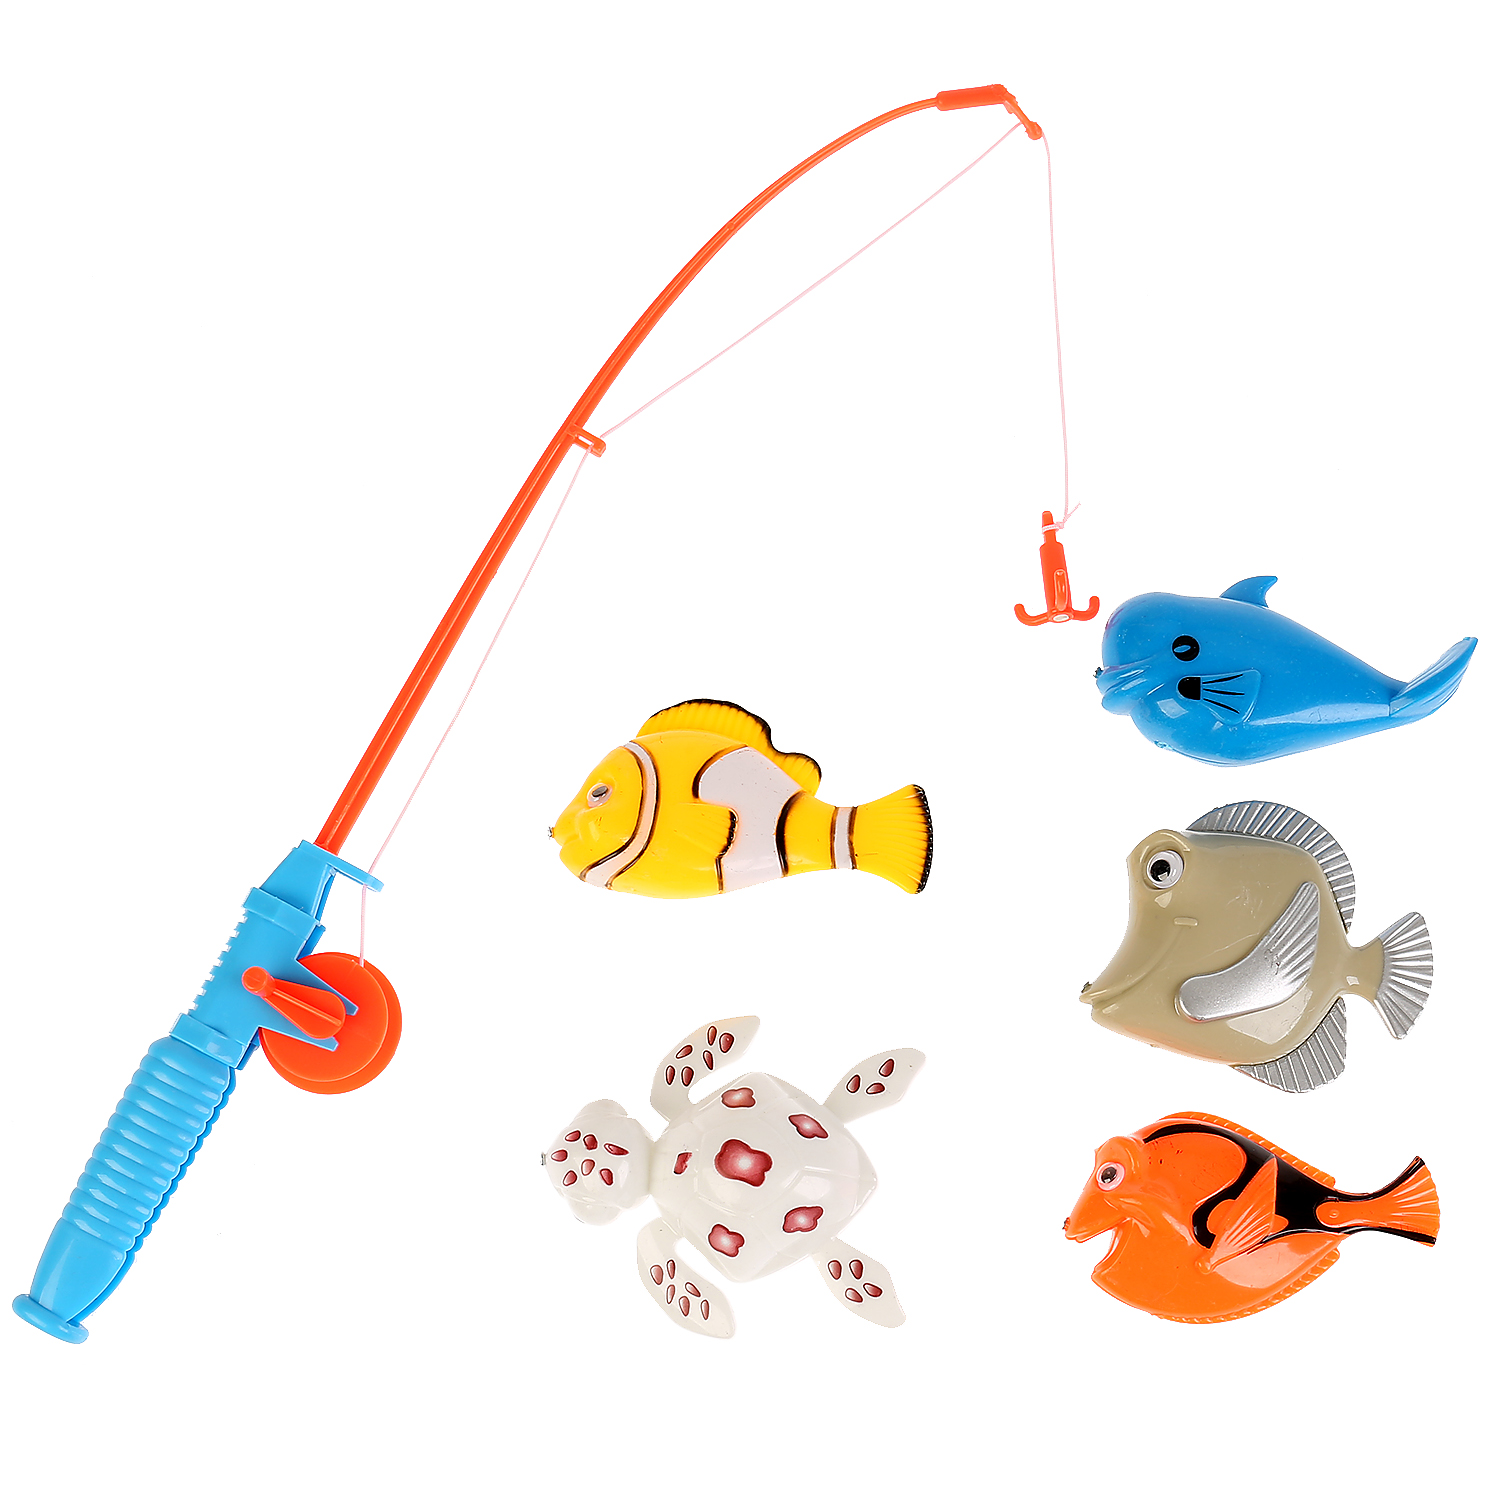 Игра в лова. Игровой набор "рыбалка. Три кота" 1508v035-r. Рыбалка игрушка для детей. Удочка игрушка. Игрушечная рыбалка для детей.